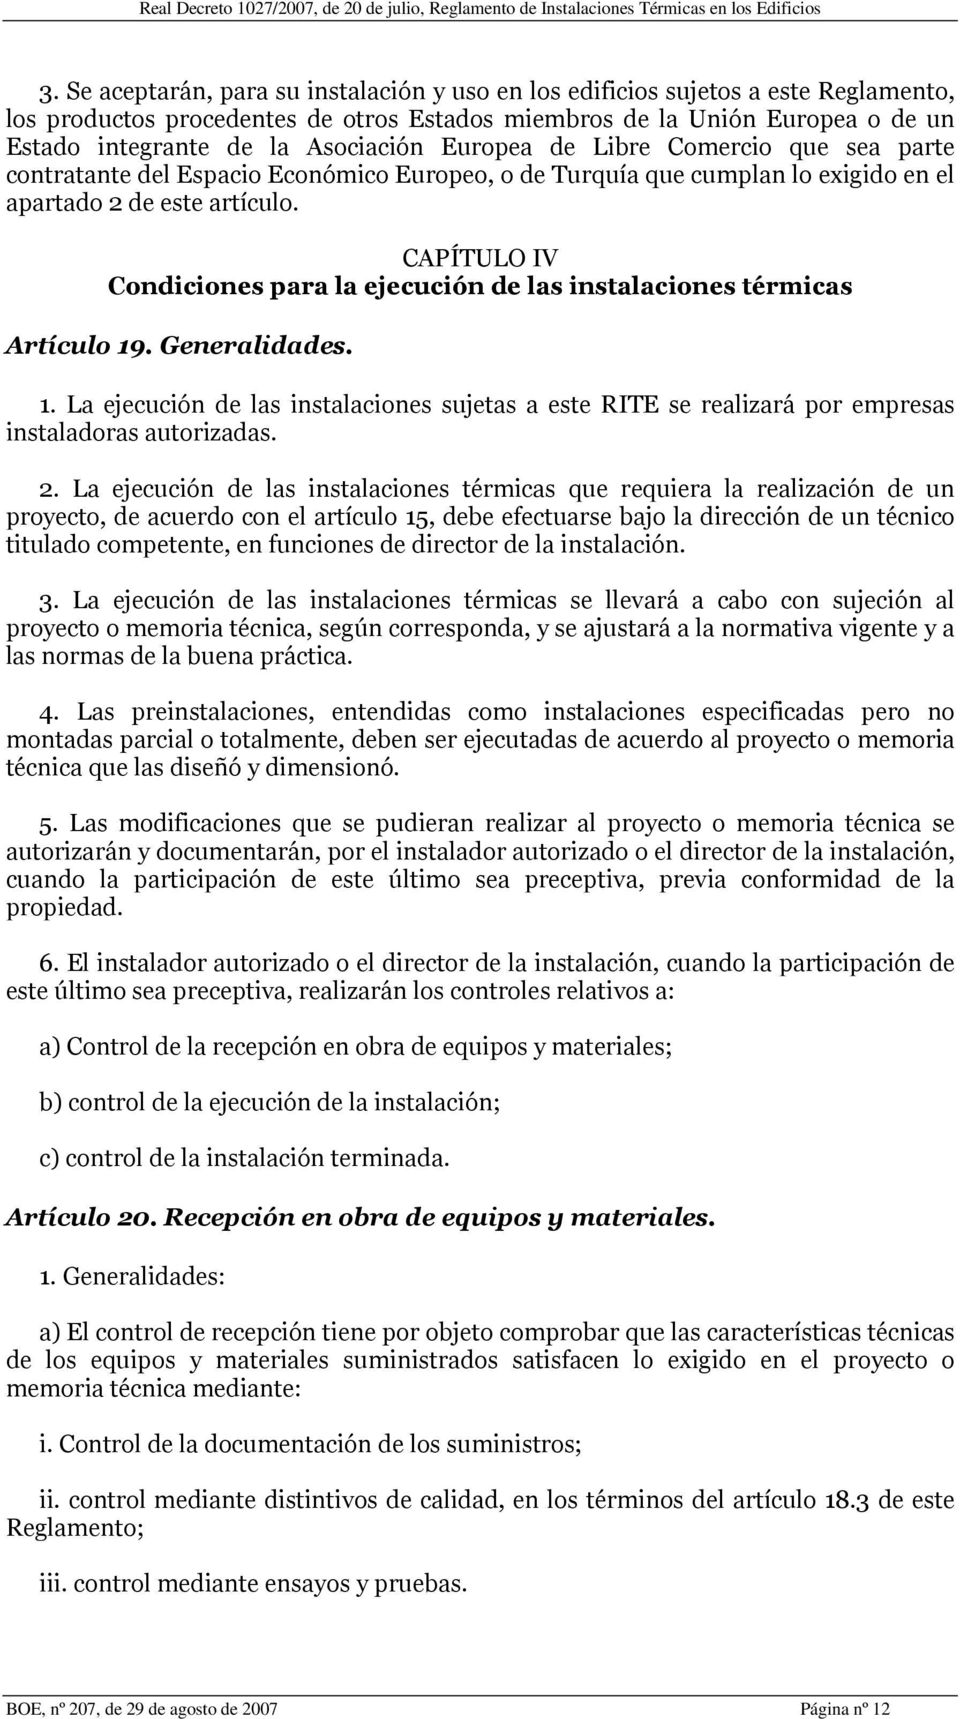 CAPÍTULO IV Condiciones para la ejecución de las instalaciones térmicas Artículo 19. Generalidades. 1. La ejecución de las instalaciones sujetas a este RITE se realizará por empresas instaladoras autorizadas.